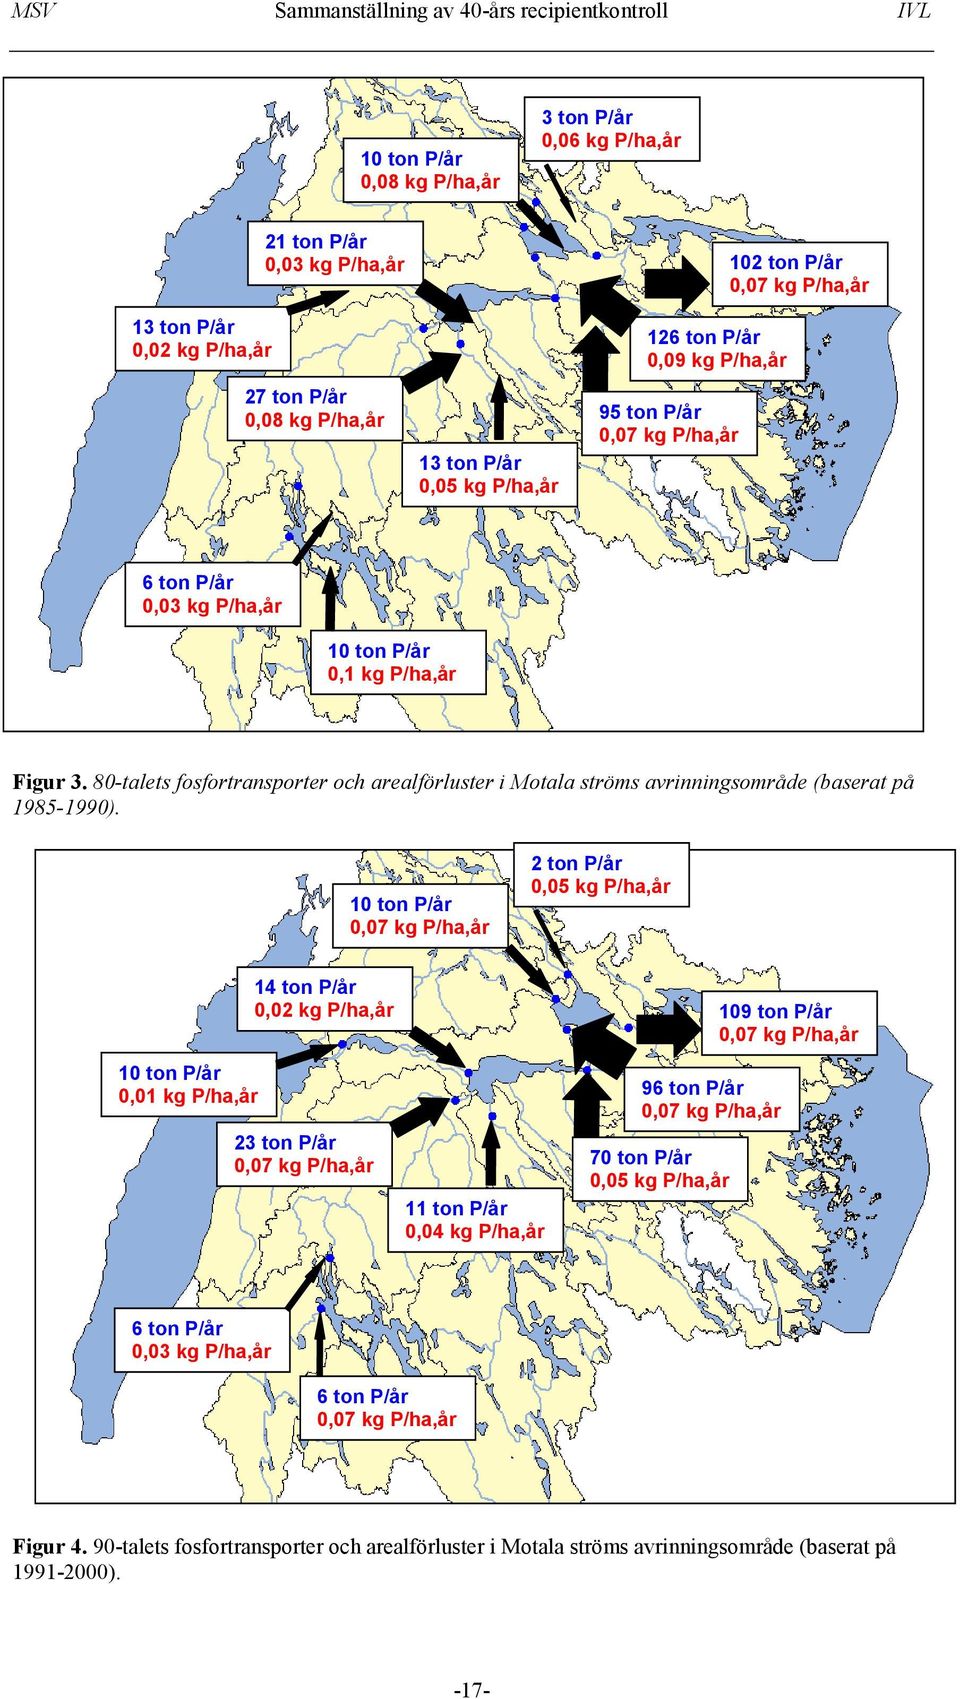 80-talets fosfortransporter och arealförluster i Motala ströms avrinningsområde (baserat på 1985-1990).